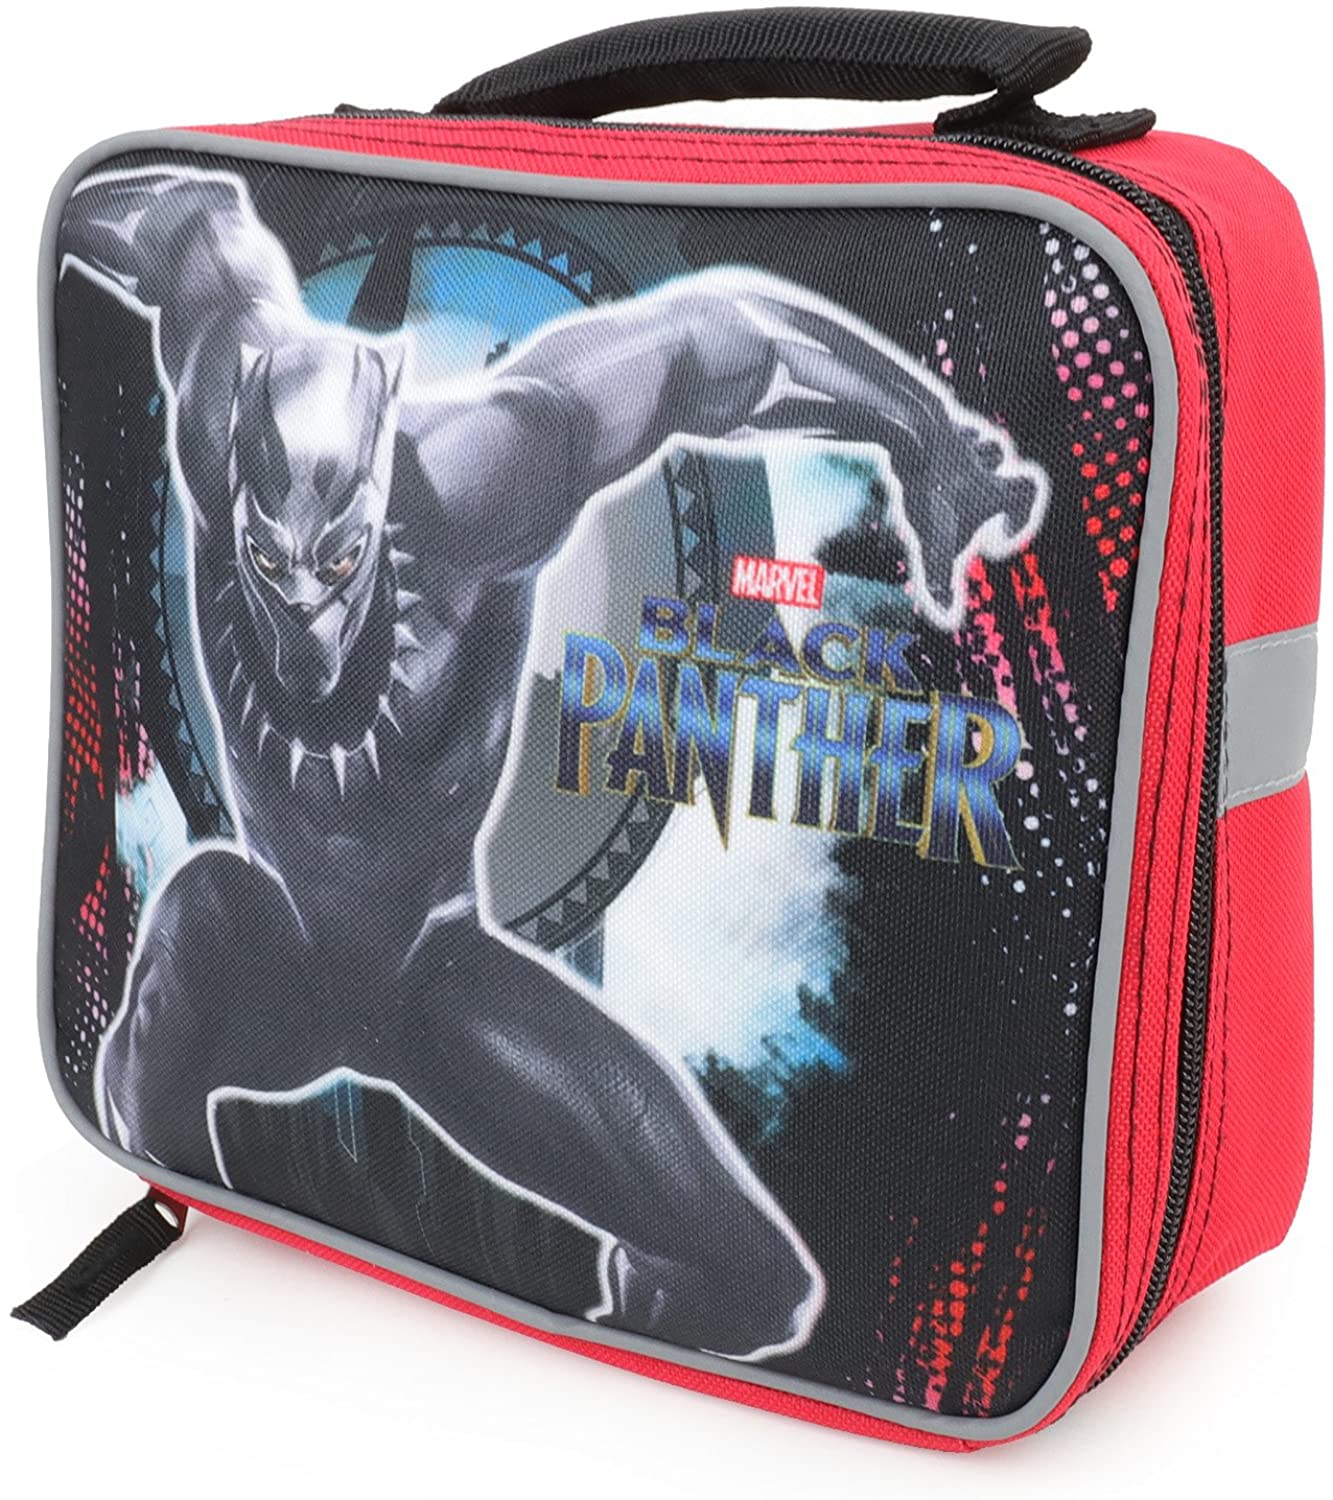 Backpack Black Panther with mesh side pocket